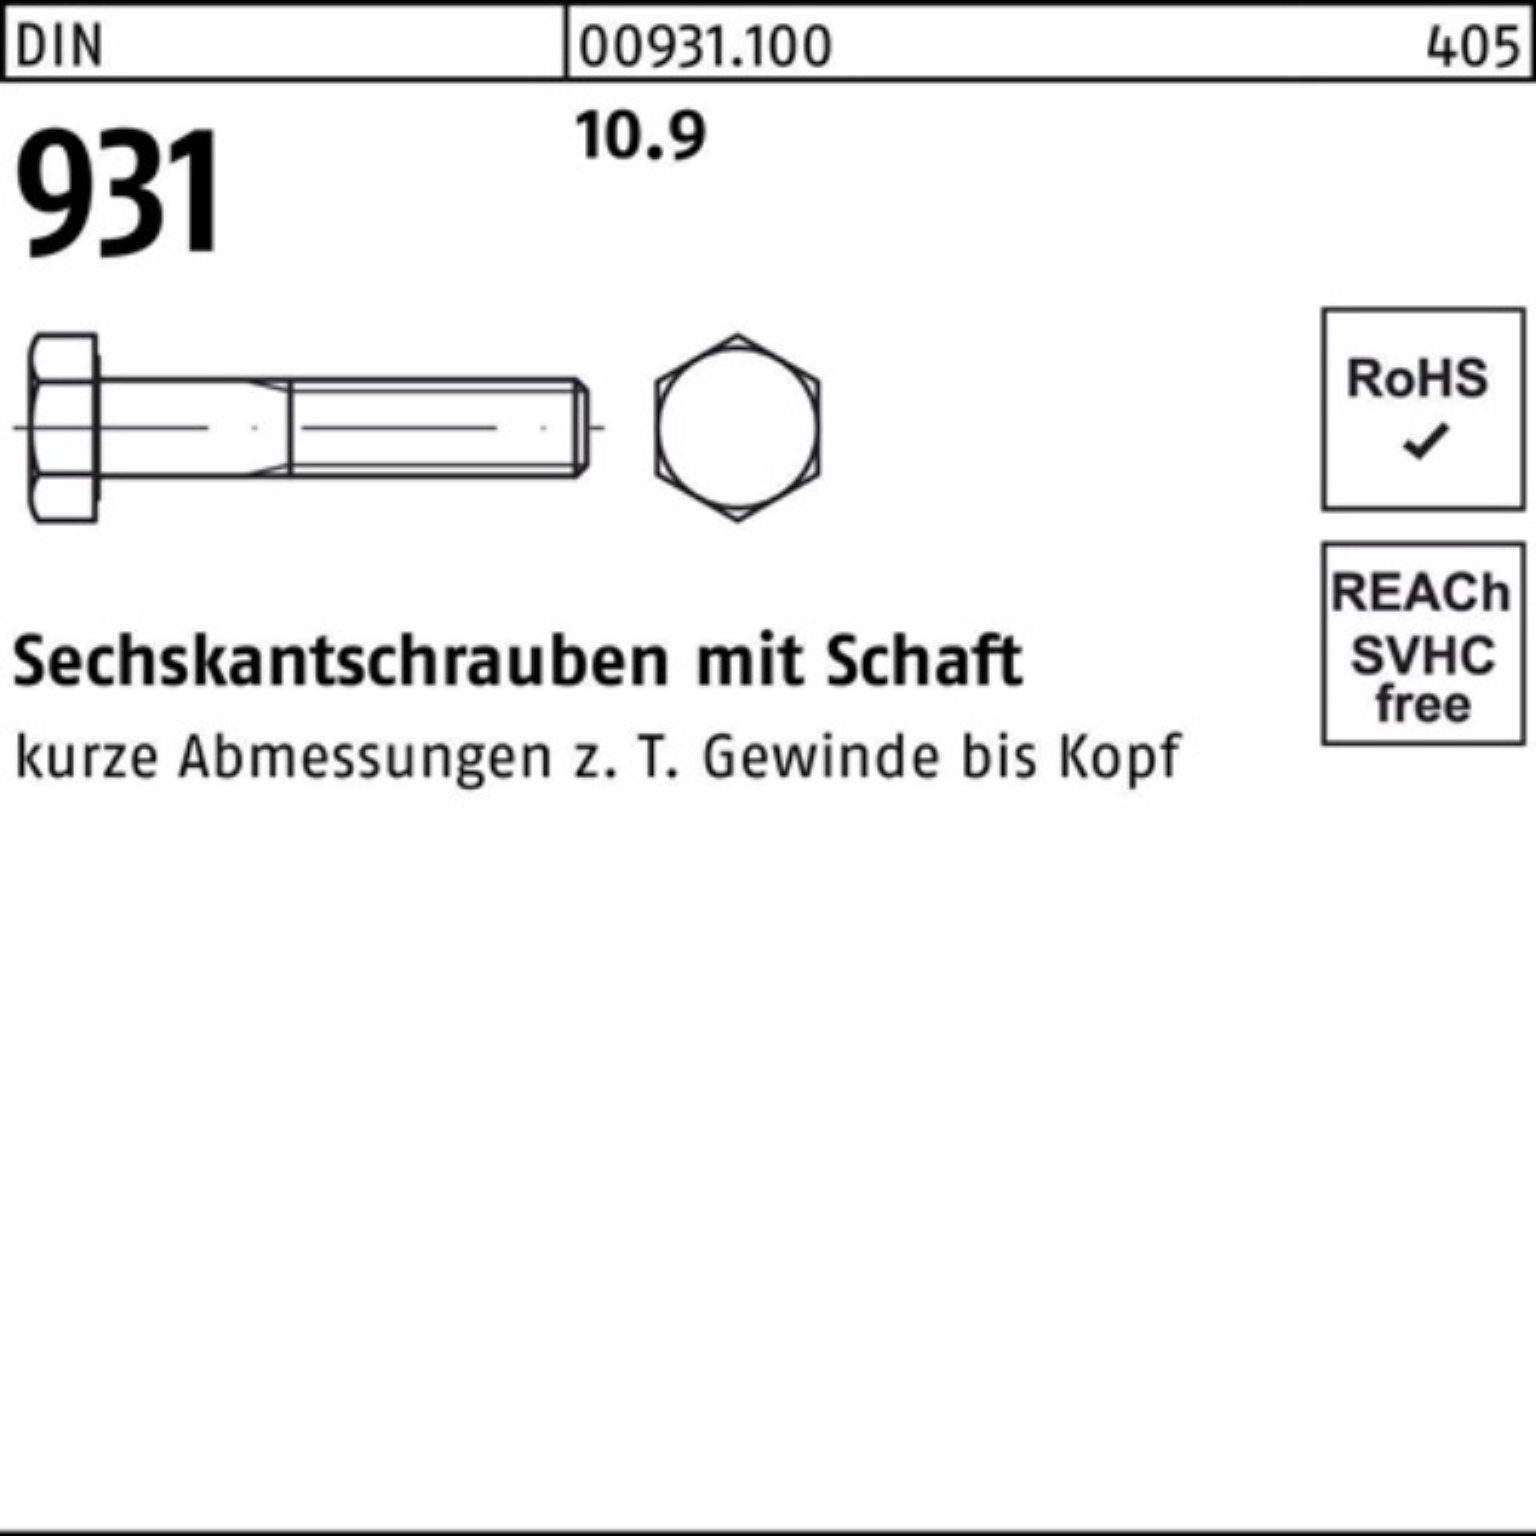 270 Reyher 100er M36x 10.9 Schaft Sechskantschraube DIN Pack Stück Sechskantschraube 931 DIN 1